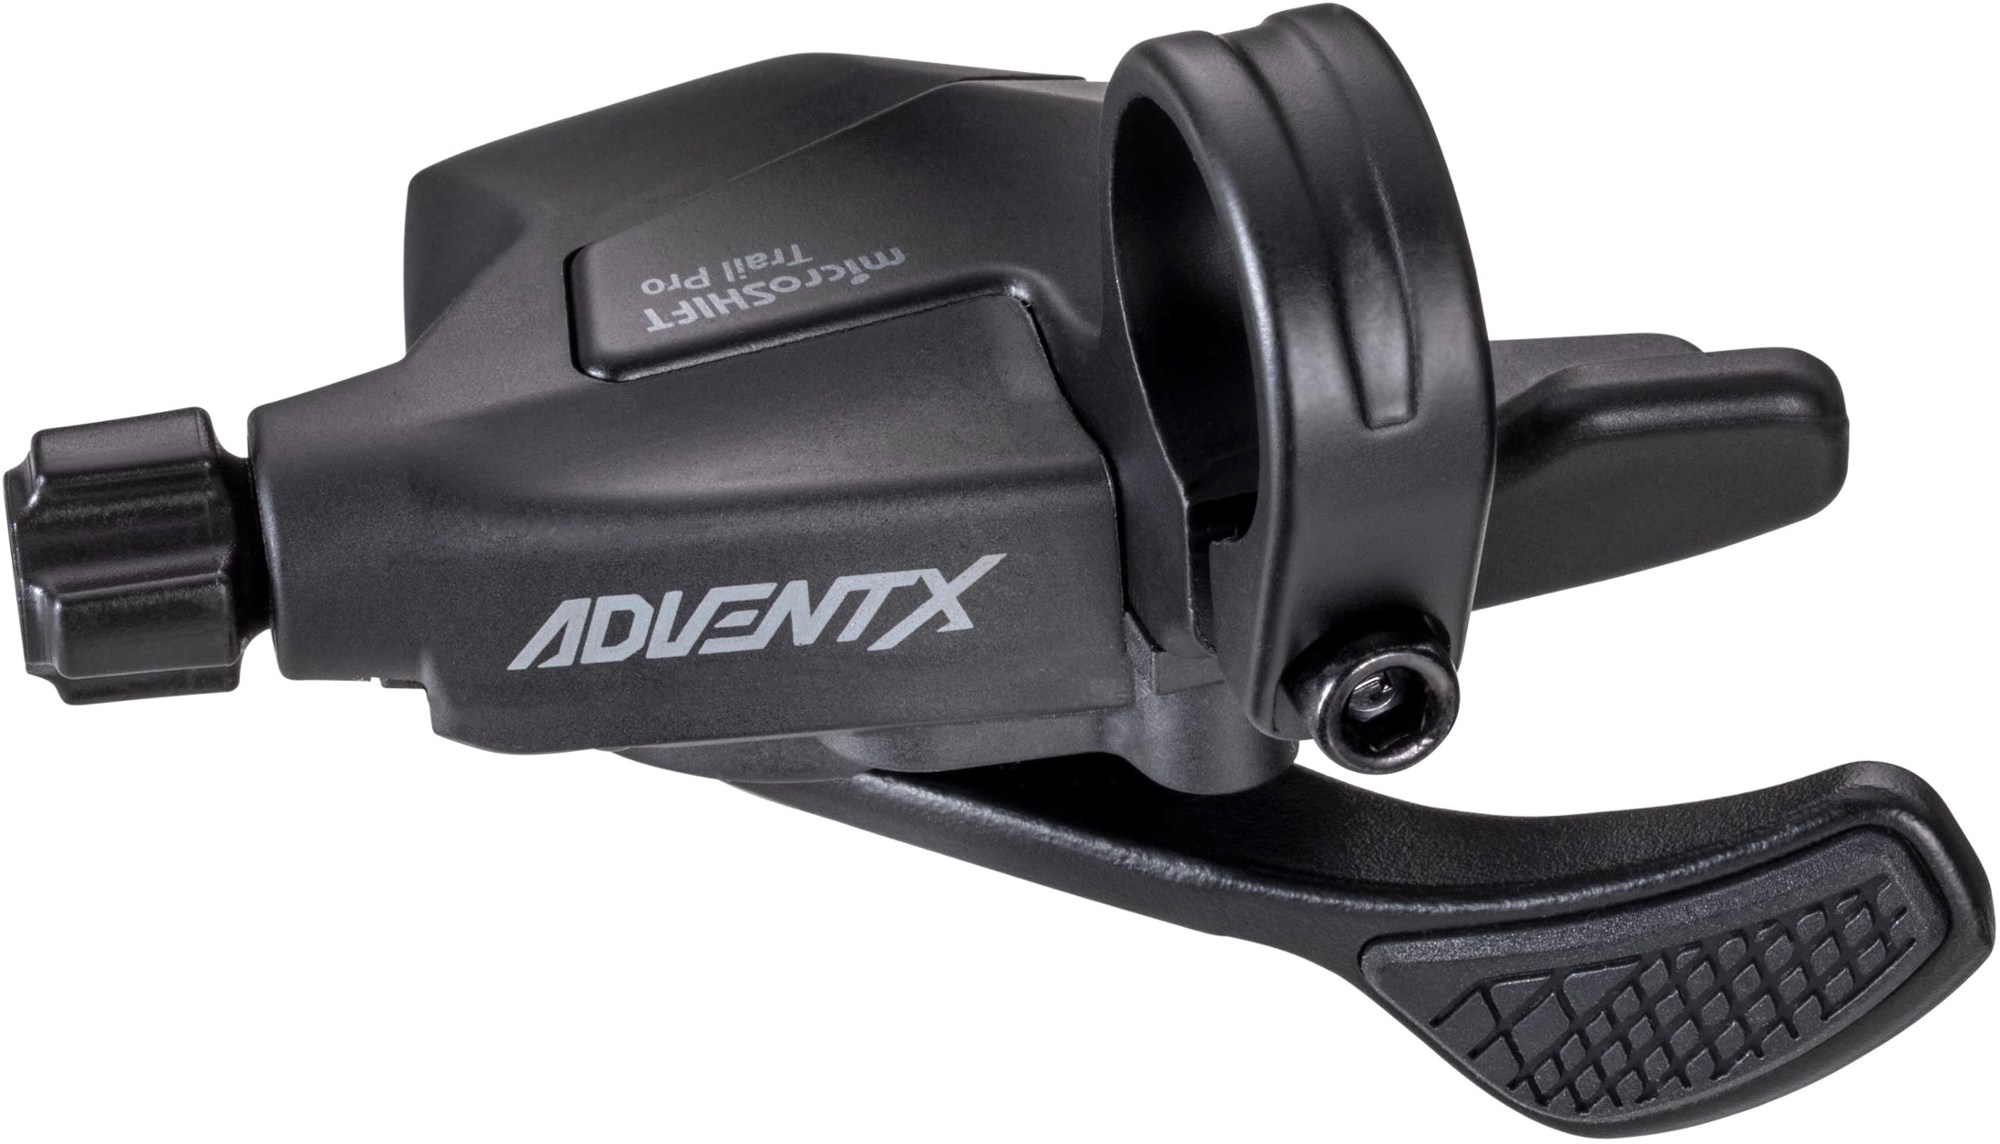 ADVENT X Trail Trigger Pro, 10-ступенчатая правая коробка передач microSHIFT, черный универсальный переключатель передач мотоциклетный протектор обуви резиновый рычаг переключения передач защита рычага мотоцикла